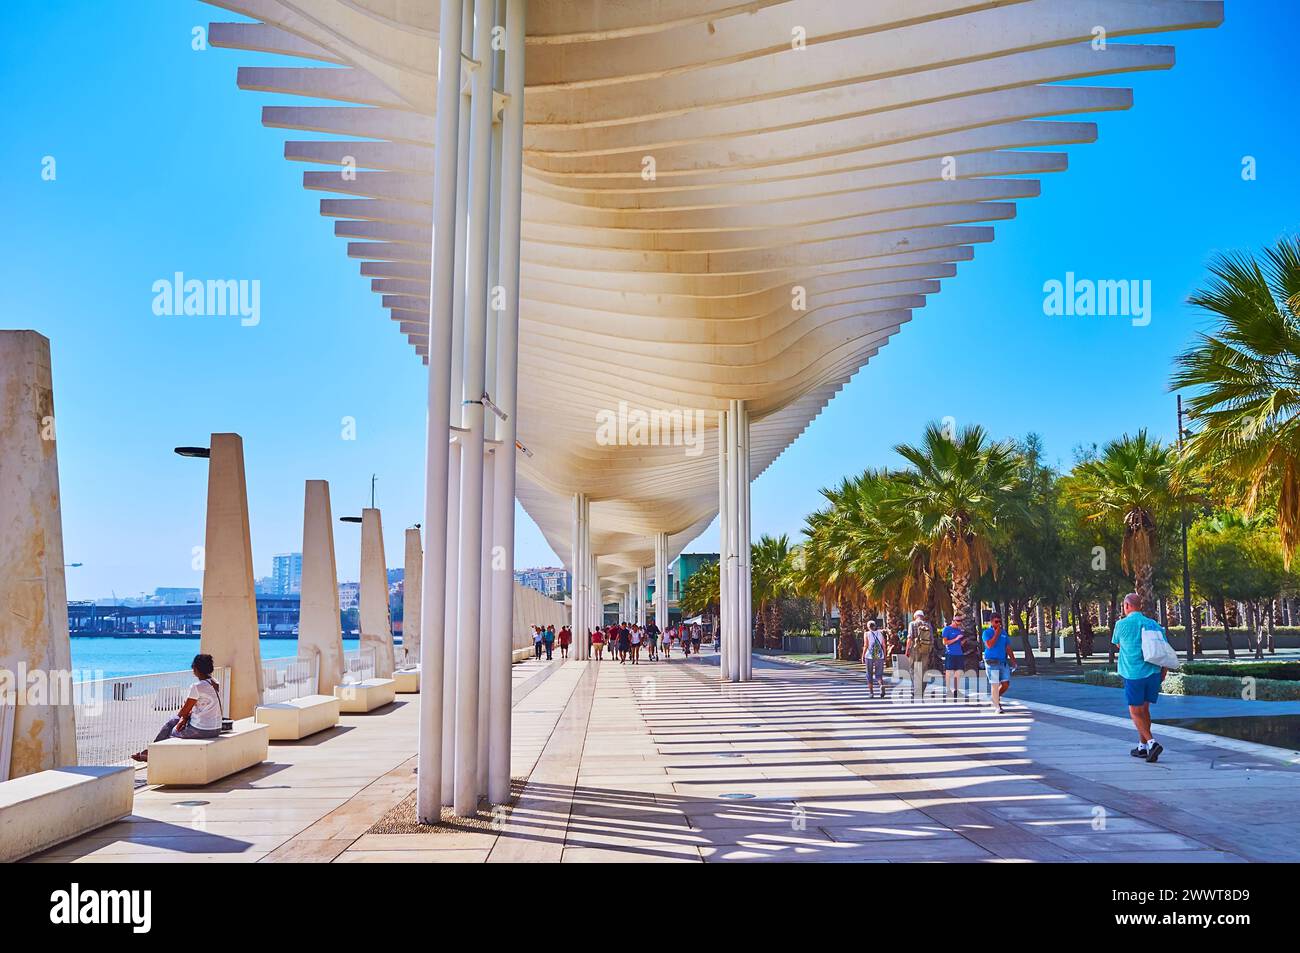 MALAGA, SPANIEN - 28. SEPTEMBER 2019: Die Promenade des Palmenhains der Überraschungen entlang des Hafens von Malaga, Malaga, Spanien Stockfoto